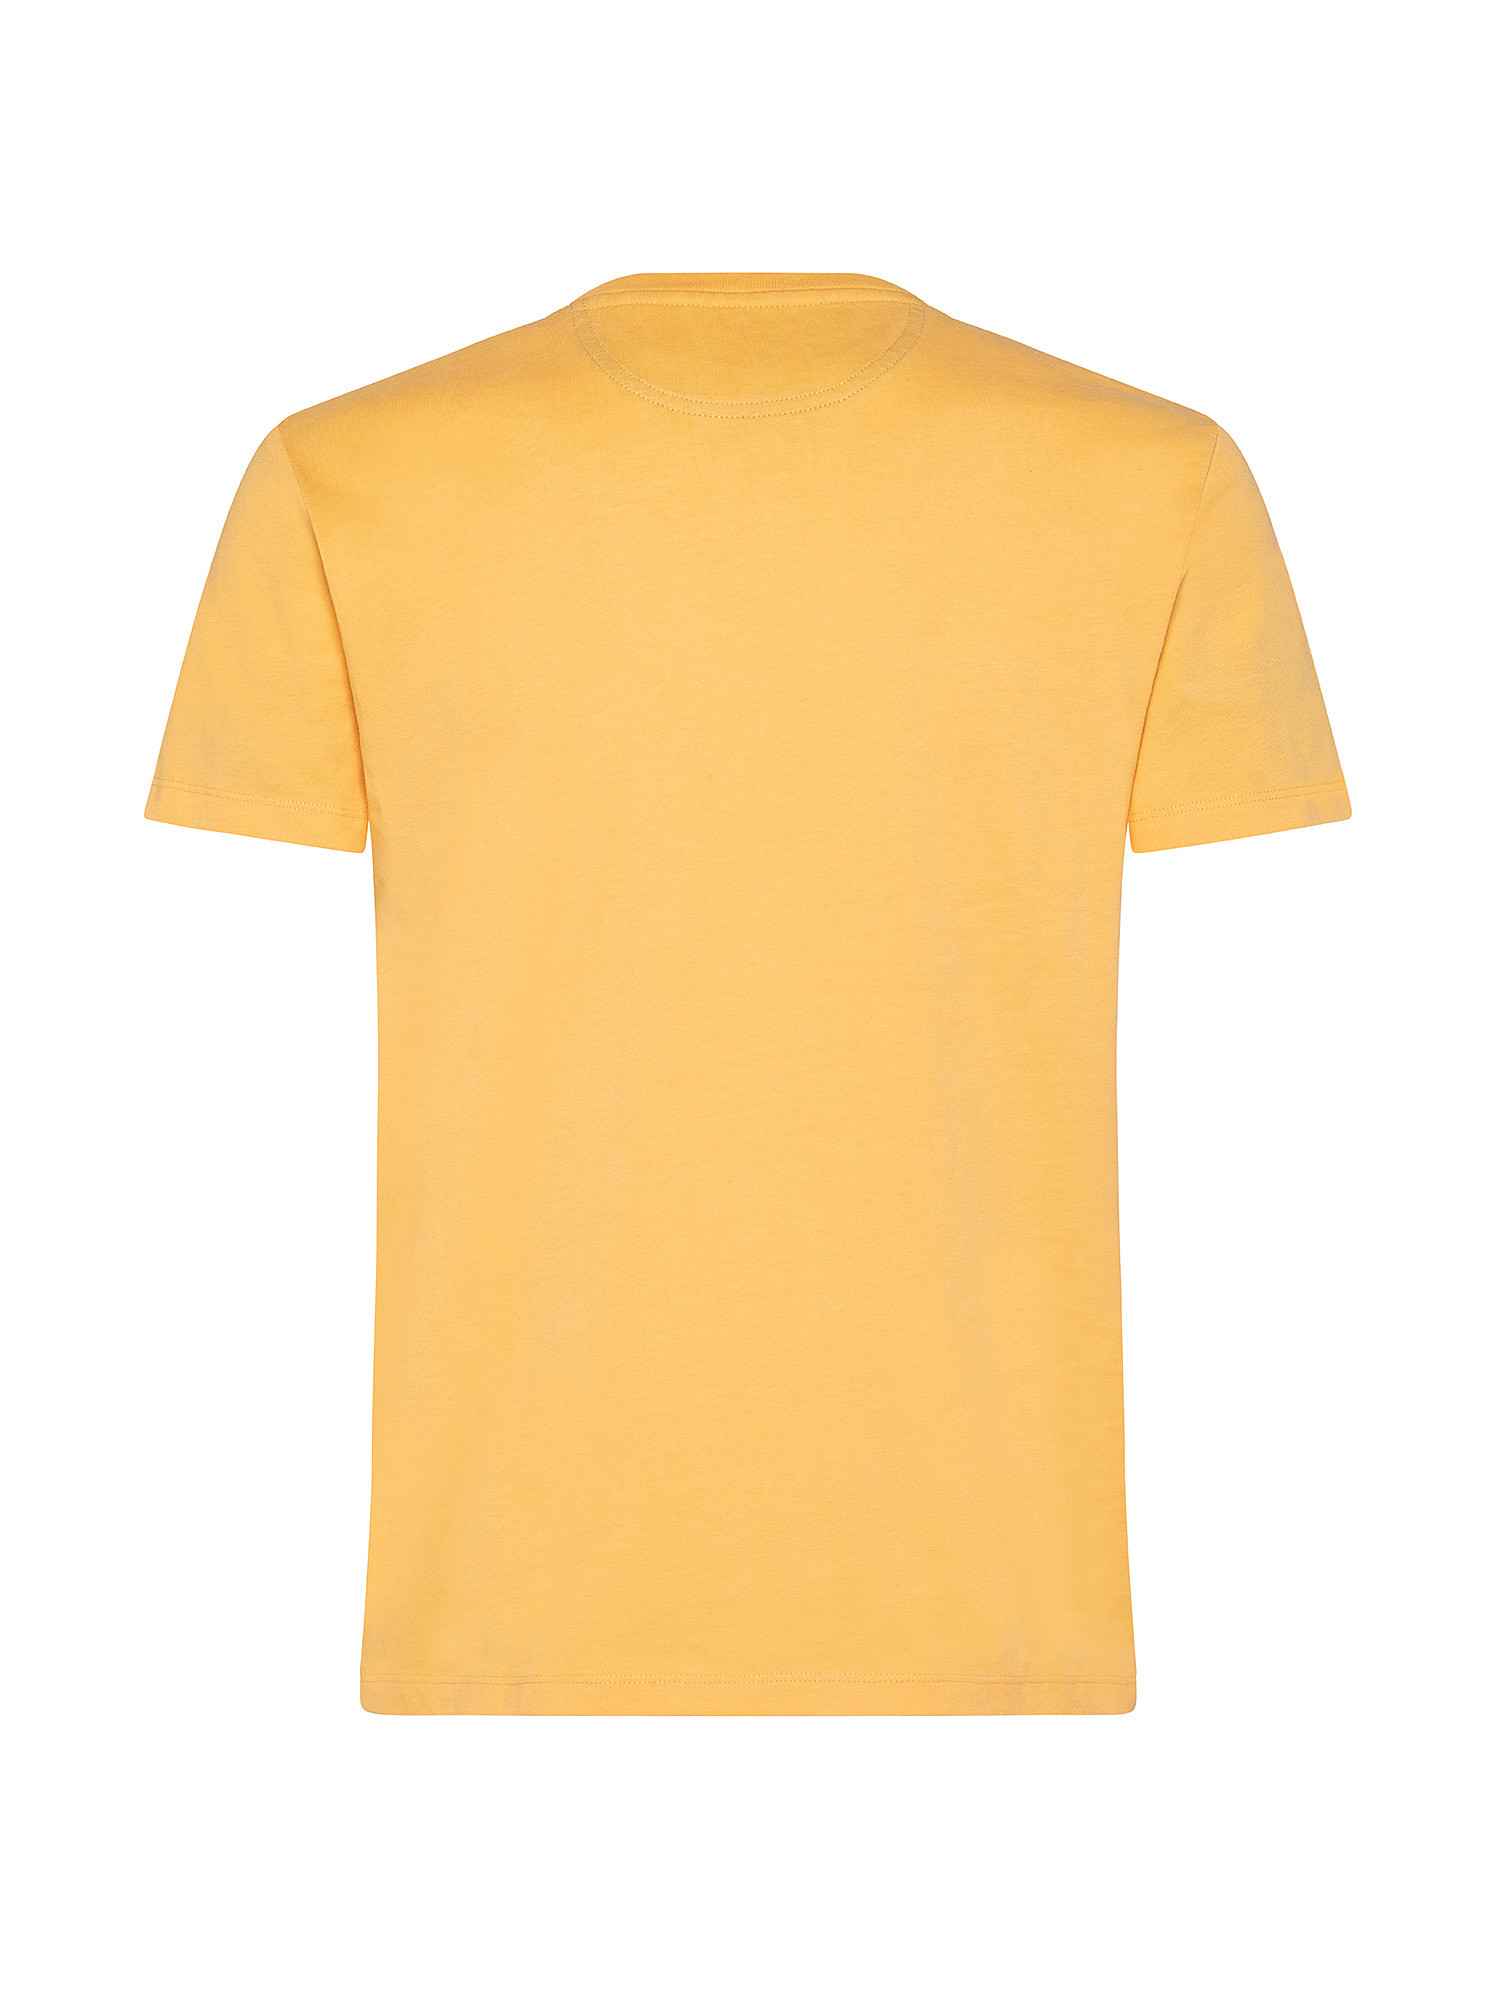 T-shirt da Uomo Dunstan River, Arancione, large